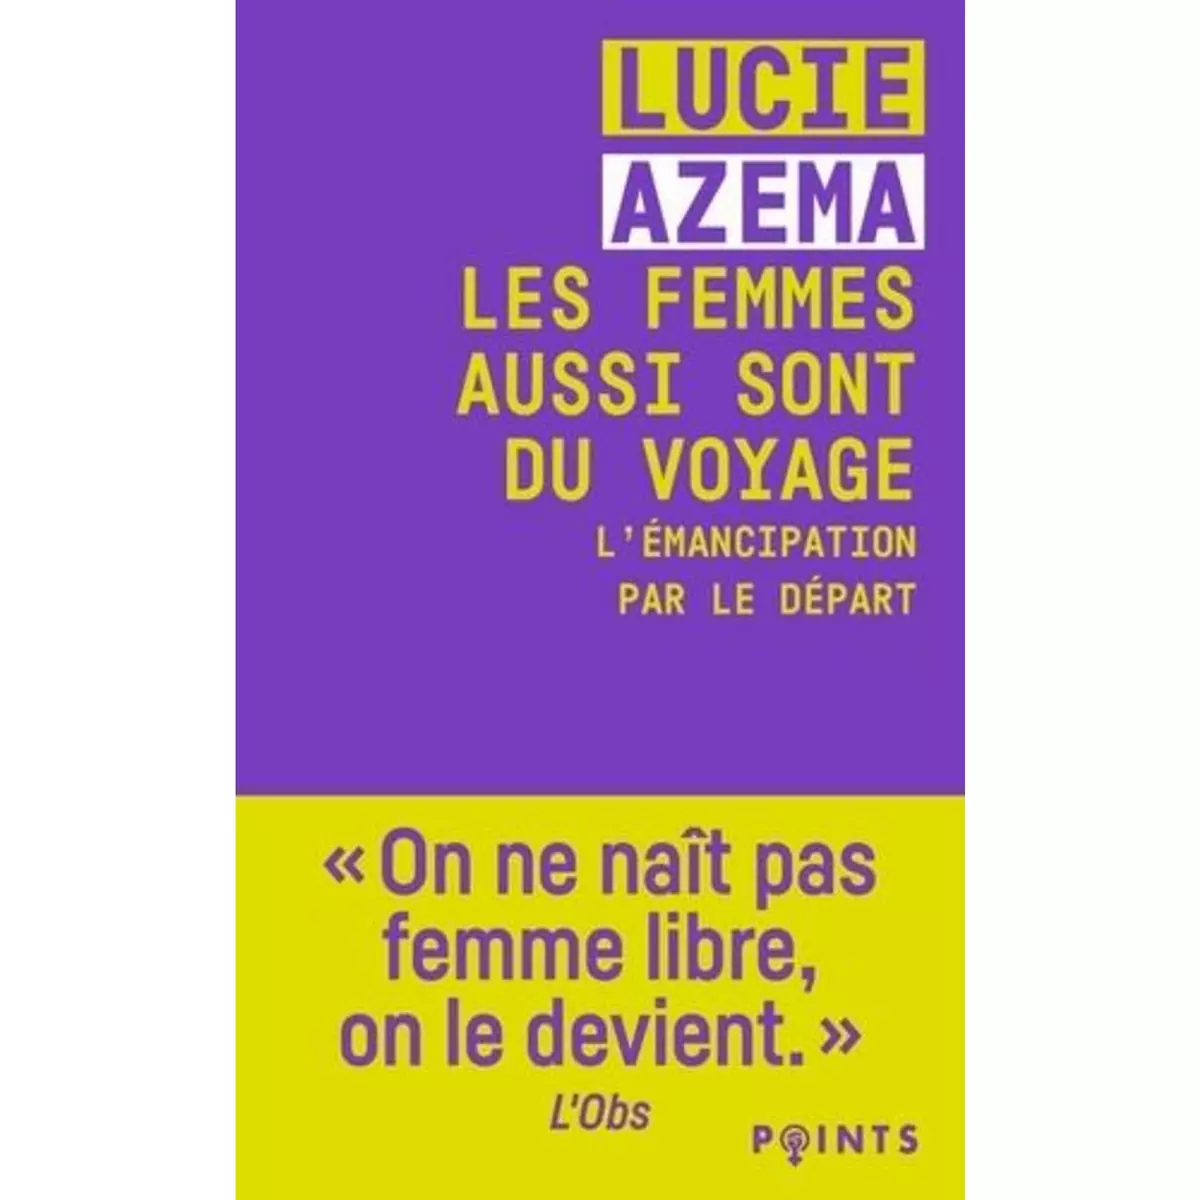  LES FEMMES AUSSI SONT DU VOYAGE. L'EMANCIPATION PAR LE DEPART, Azema Lucie